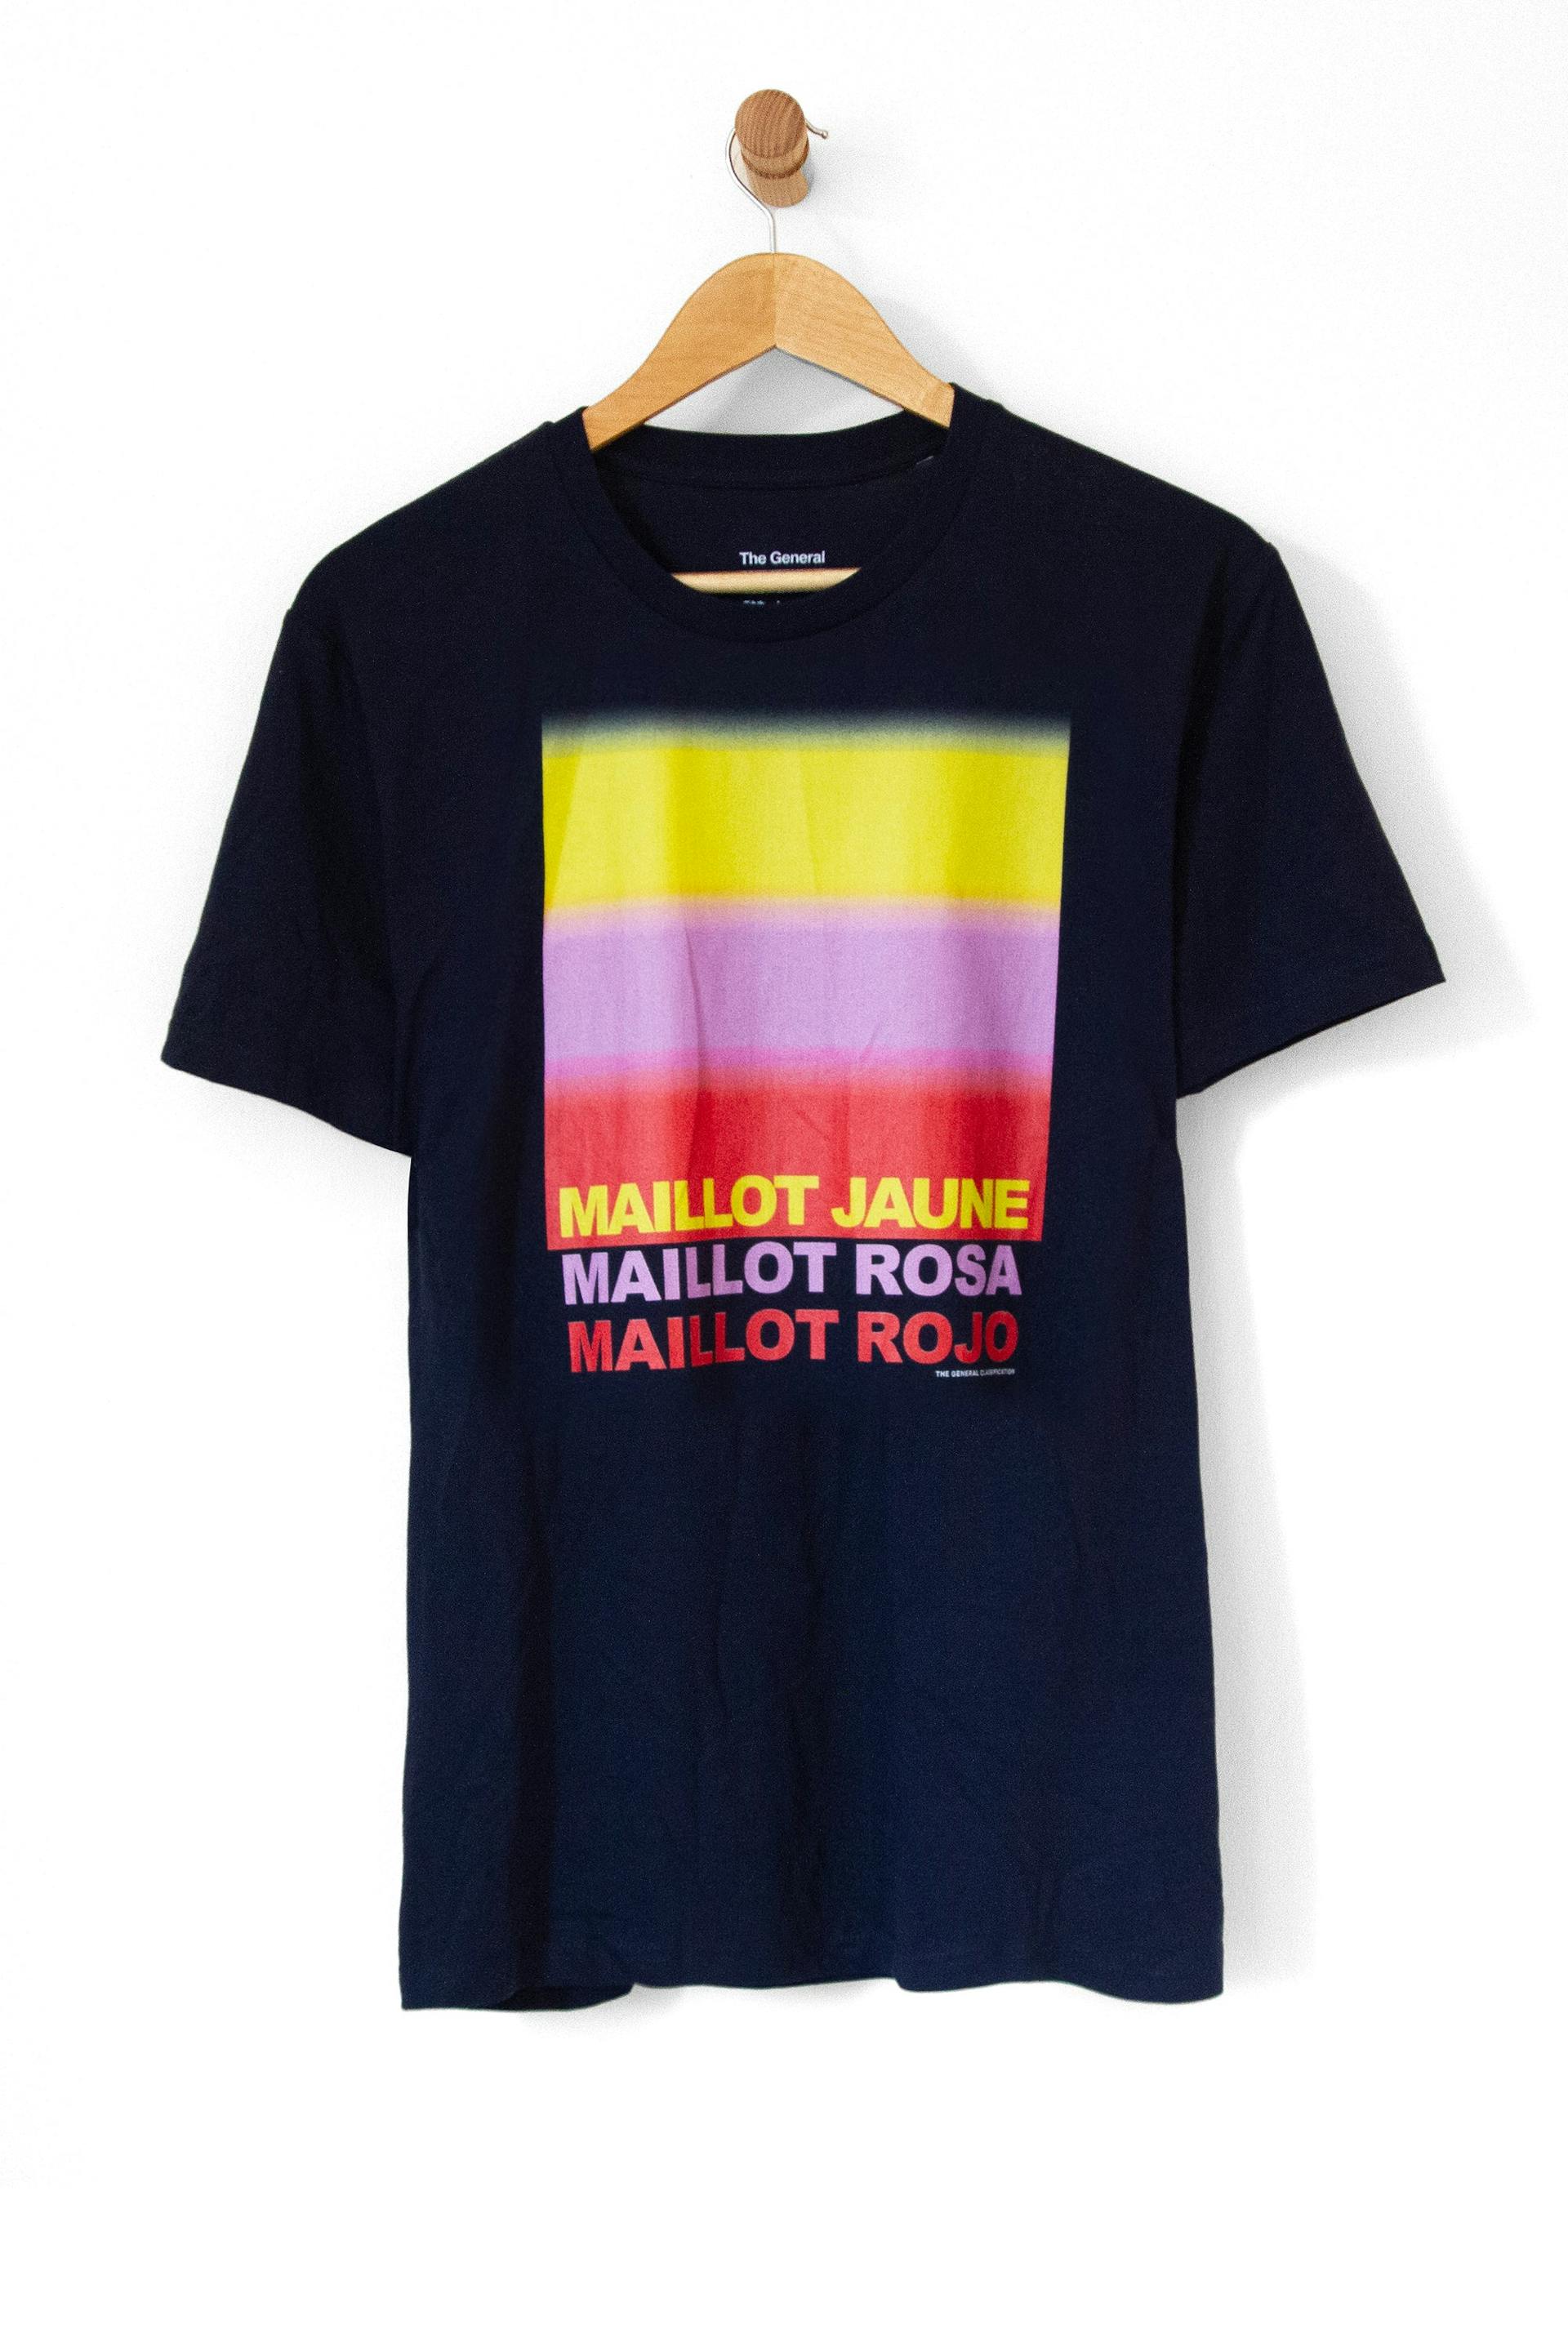 Maillot Tee Navy